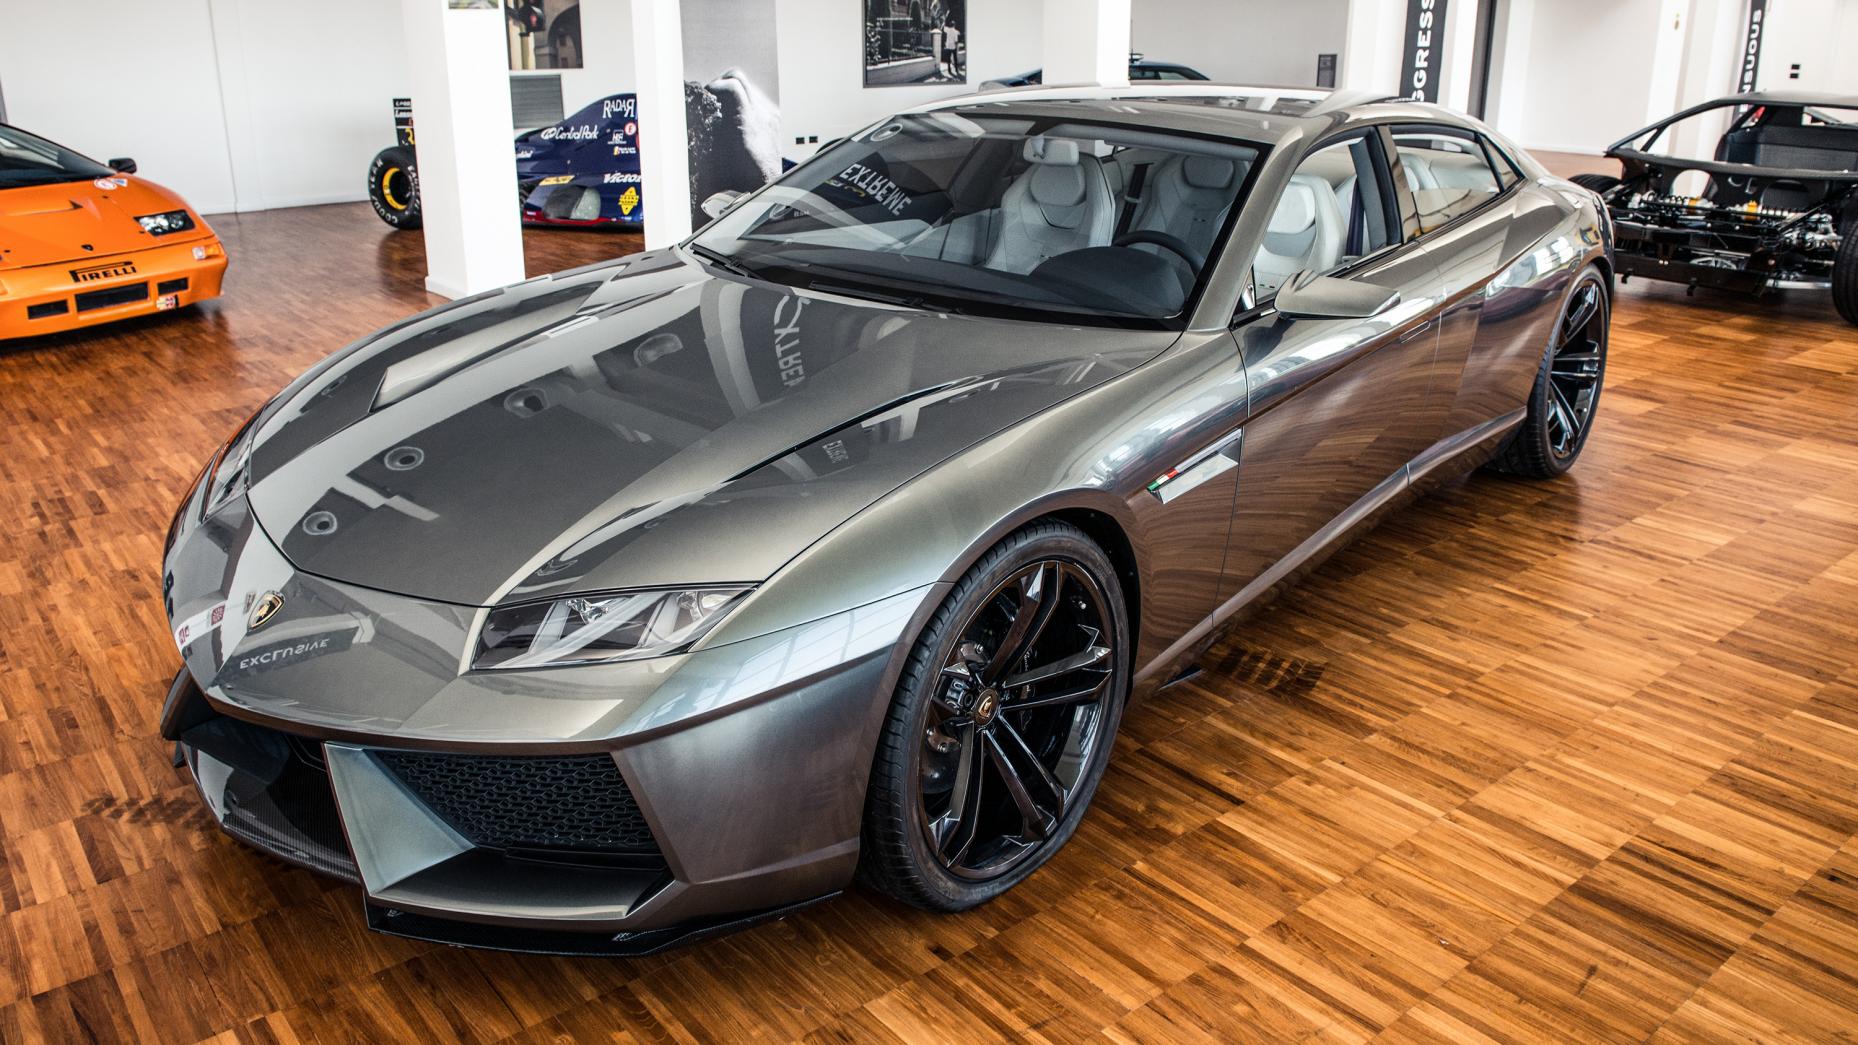 
Lamborghini Estoque: Đây từng được coi là dự án điên rồ của Lamborghini với dòng xe 4 cửa nhằm cạnh tranh với Porsche Panamera hay Aston Martin Rapide. Song, sau đó, do ảnh hưởng của kinh tế suy thoái, mẫu xe nhanh chóng đi vào ngõ cụt.
